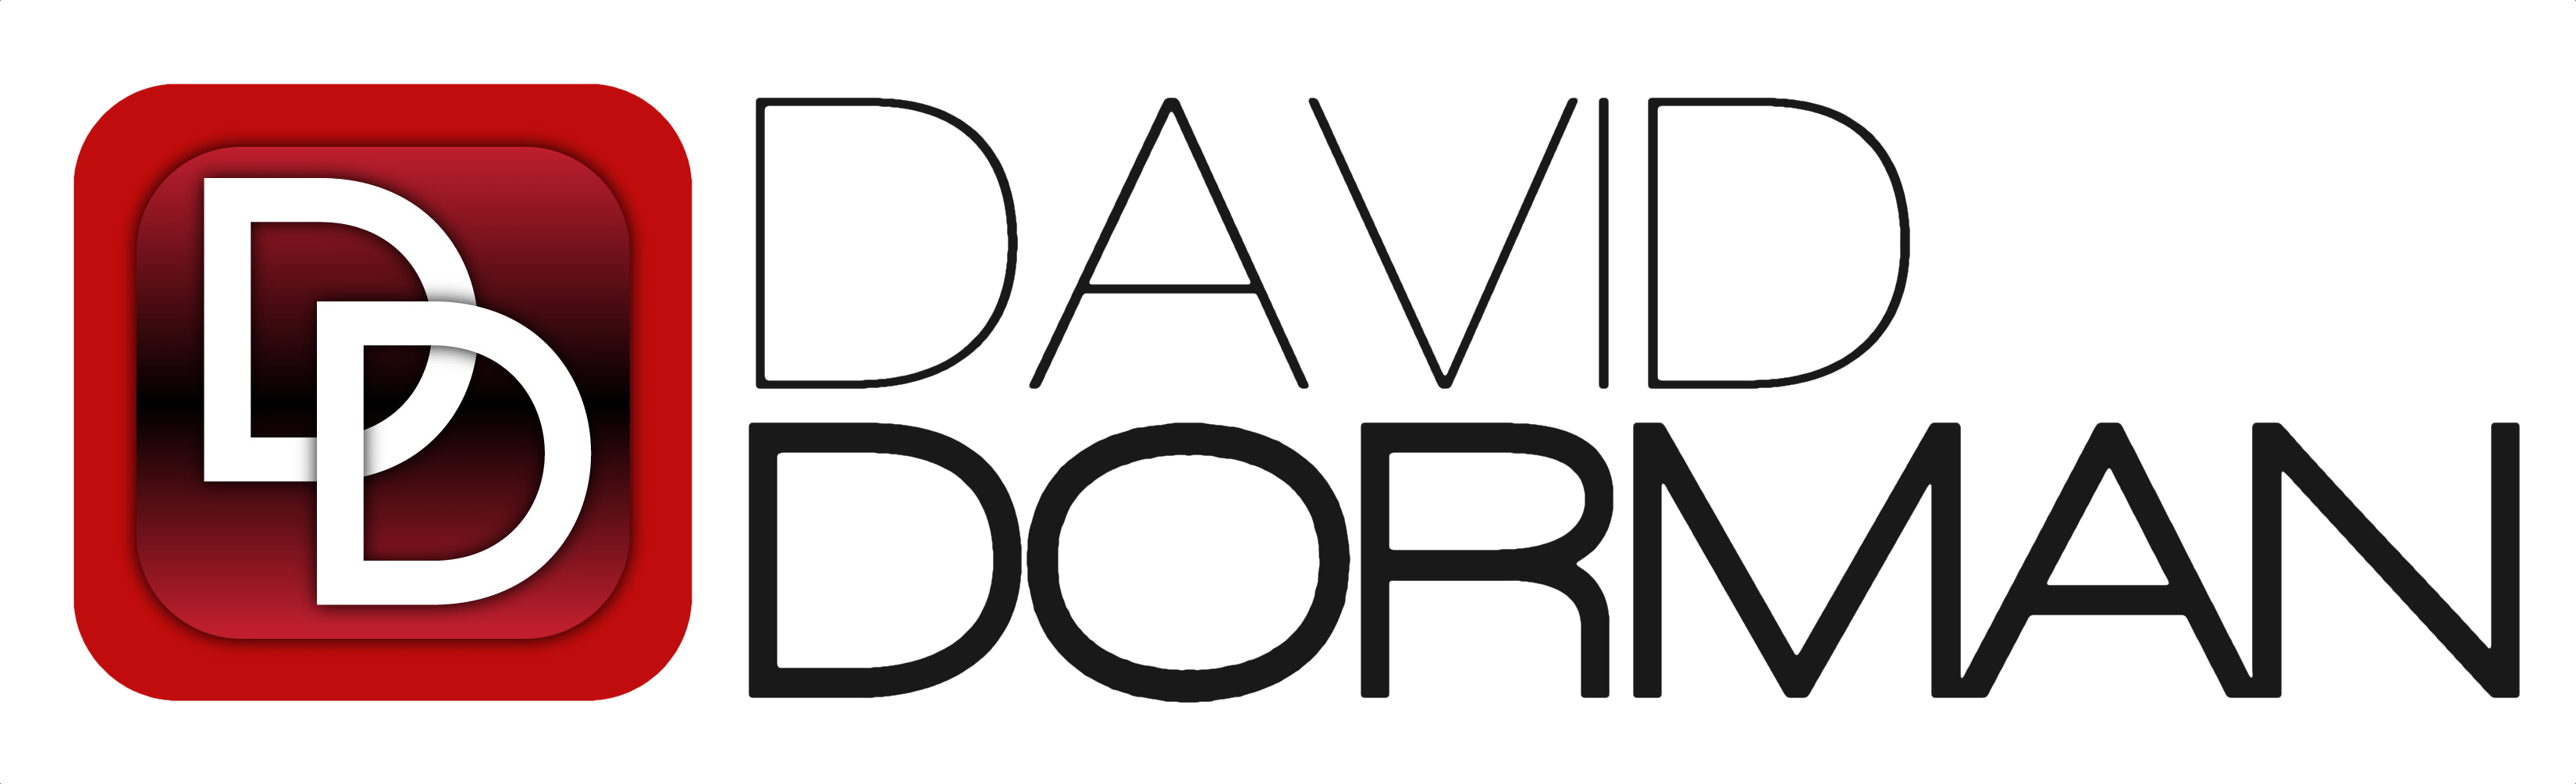 David Dorman Realtor logo